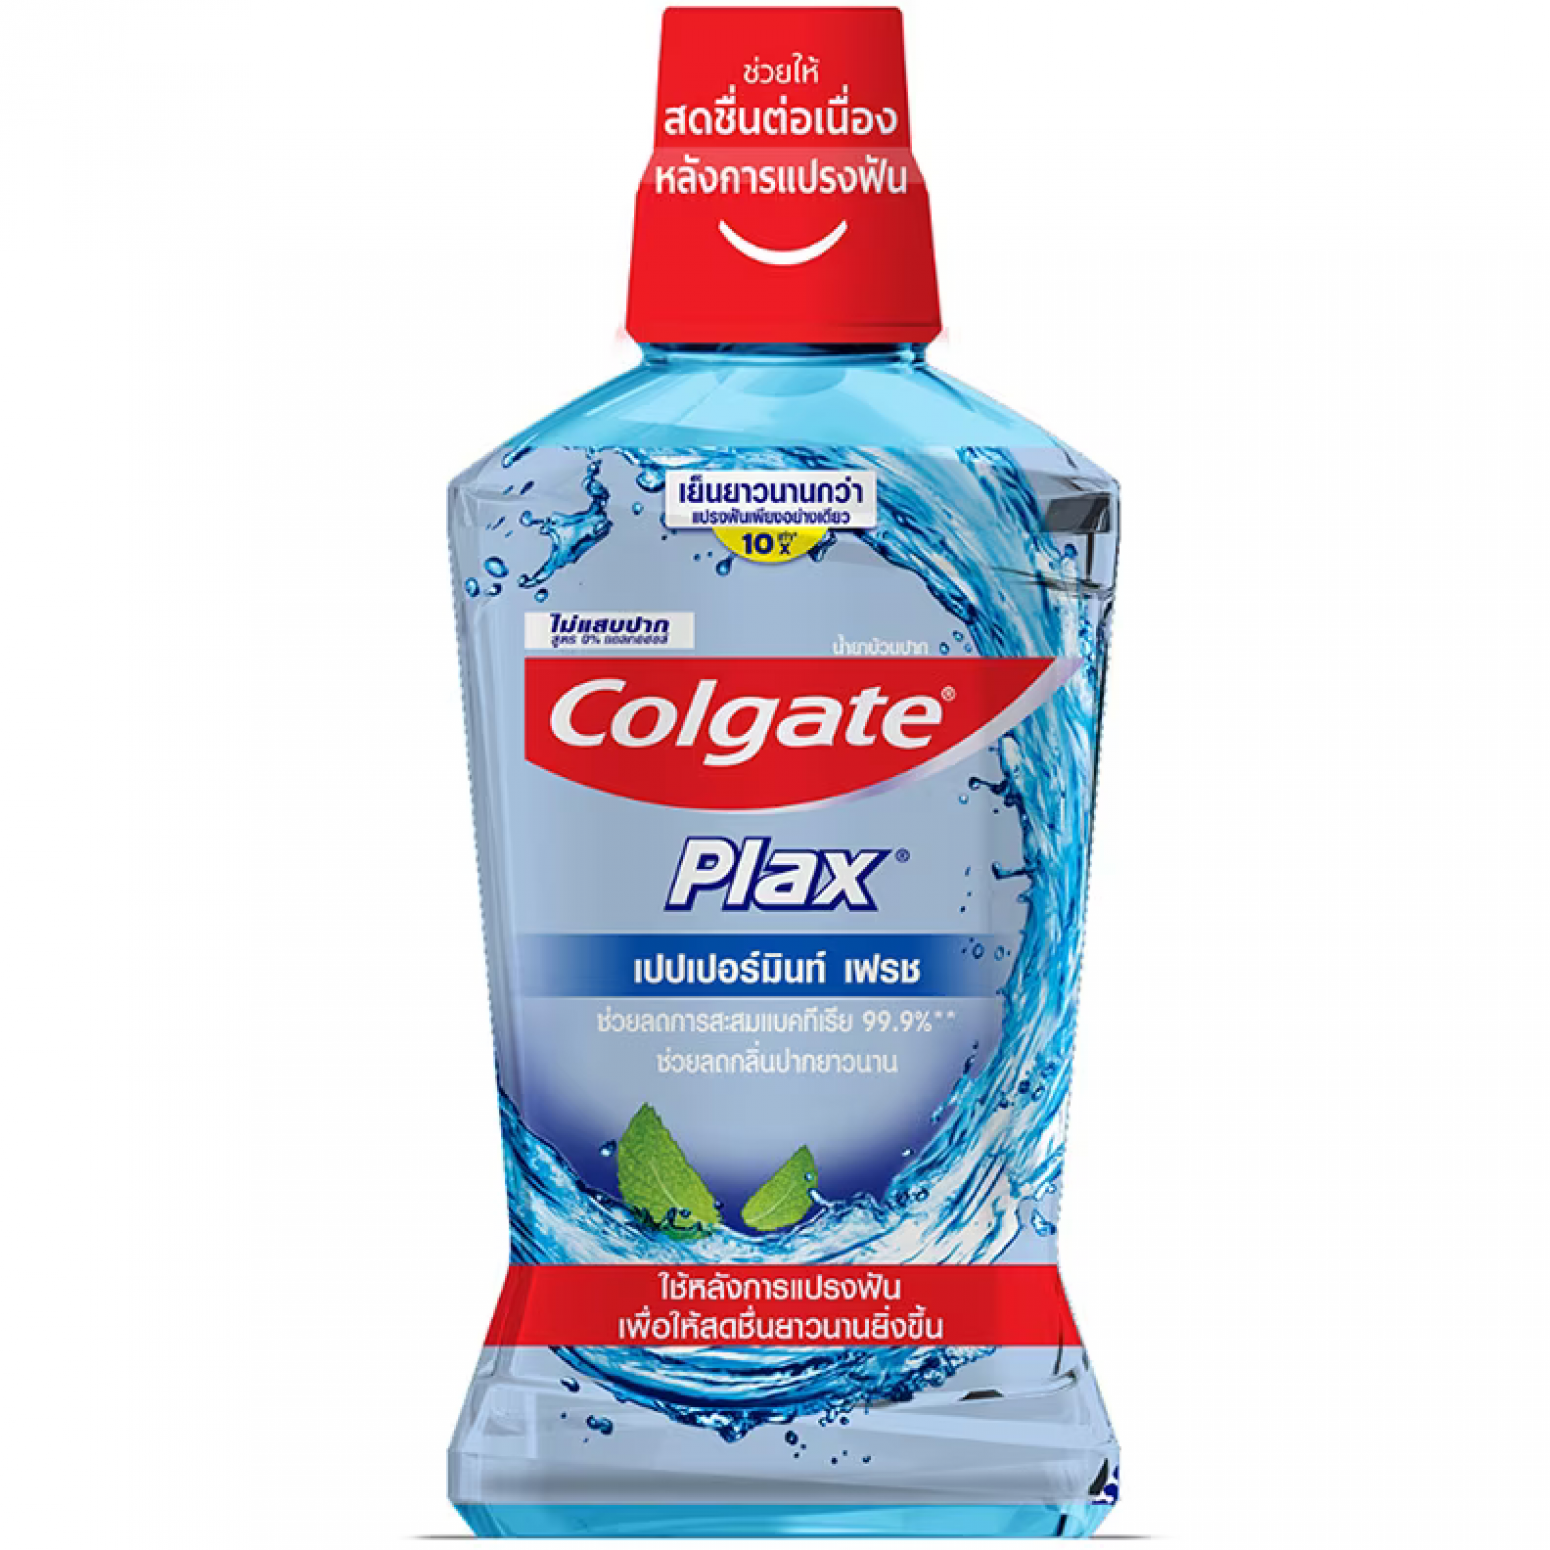 Colgate Plax Peppermint Mouthwash 500ml